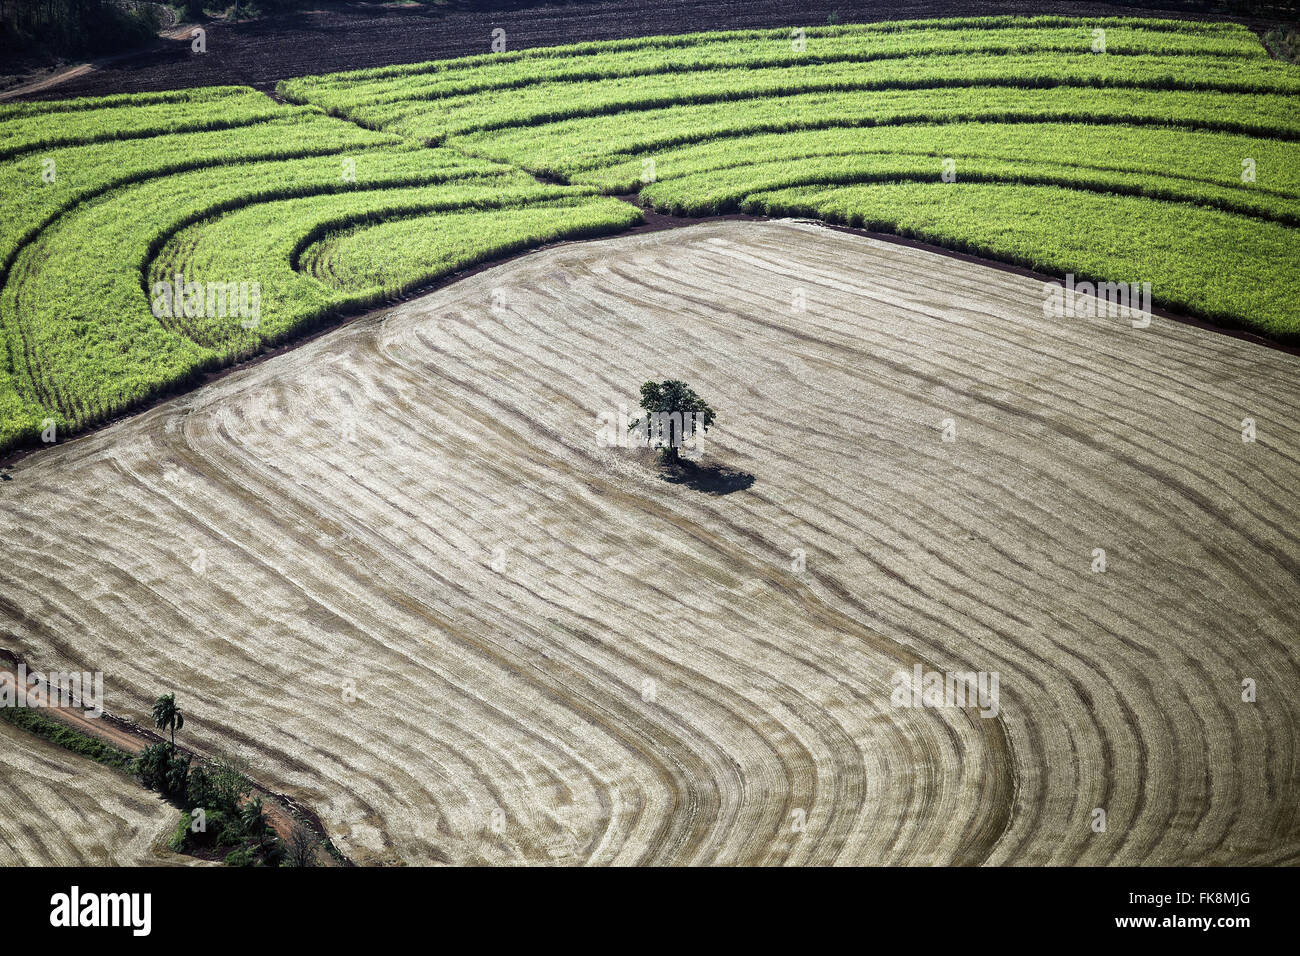 Vue aérienne de champs de canne à l'arrière-plan et arbre isolé en culture du blé récolté récemment Banque D'Images